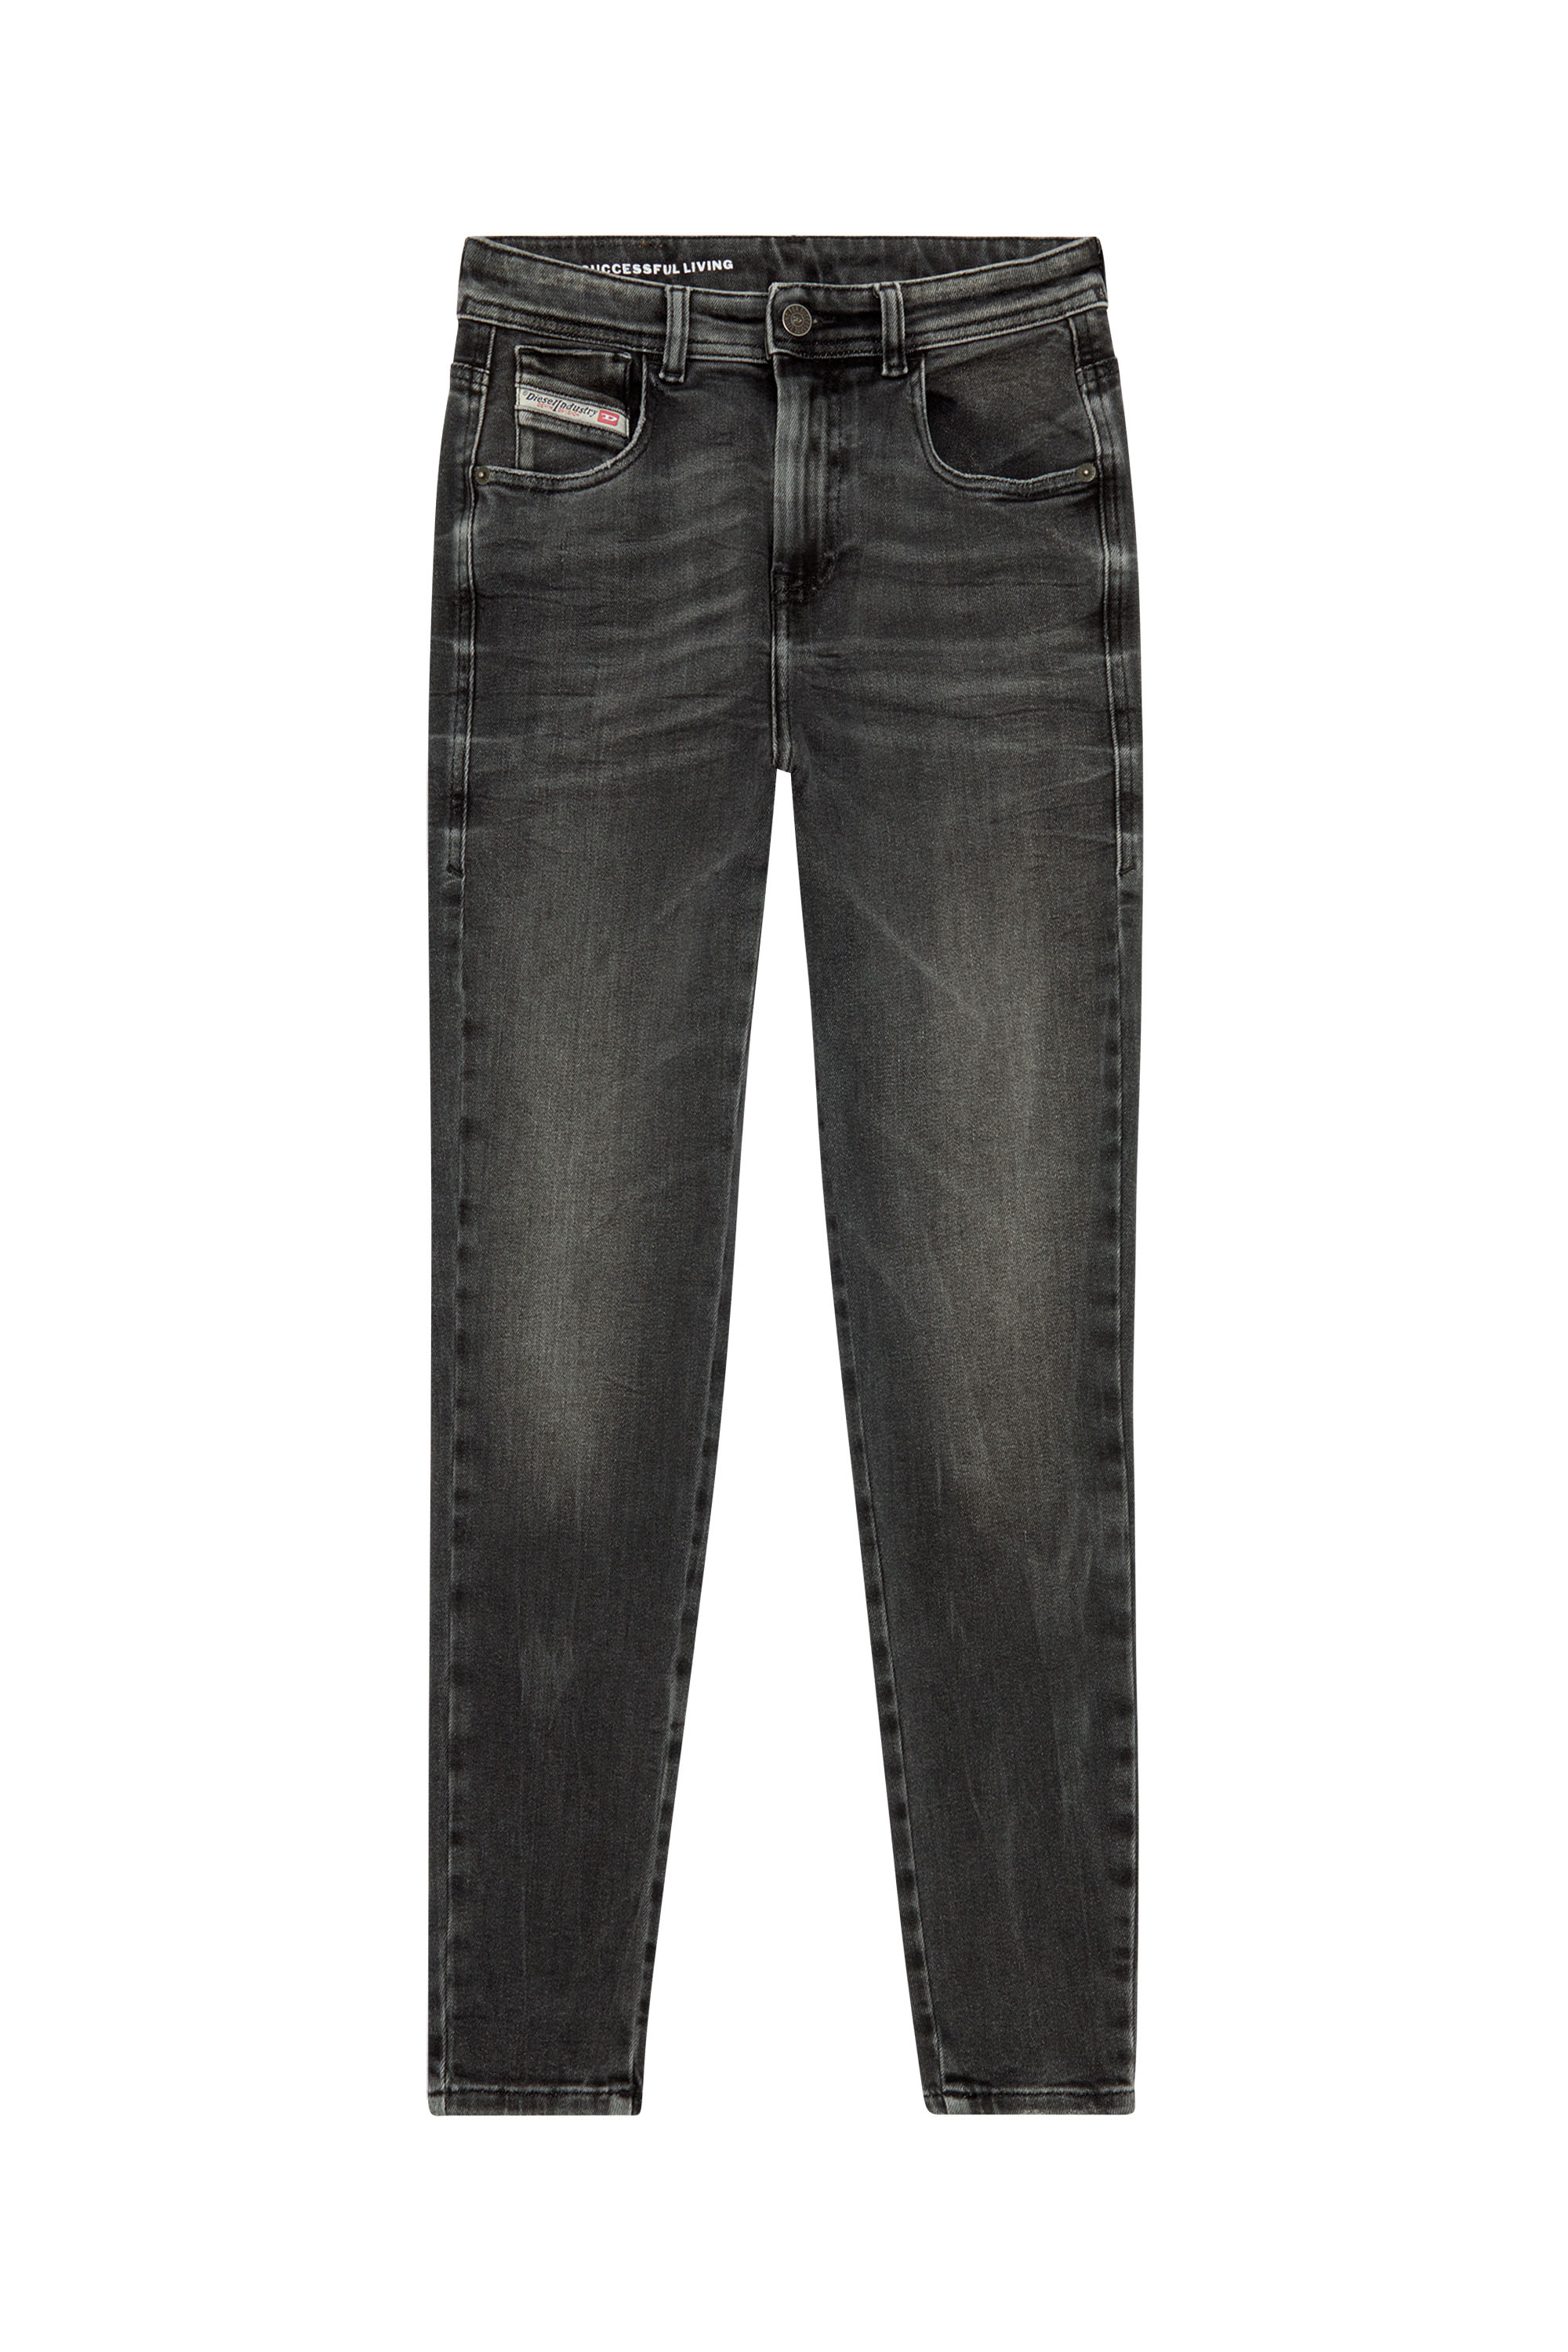 Diesel - Woman Super skinny Jeans 1984 Slandy-High 09H87, Black/Dark grey - Image 2